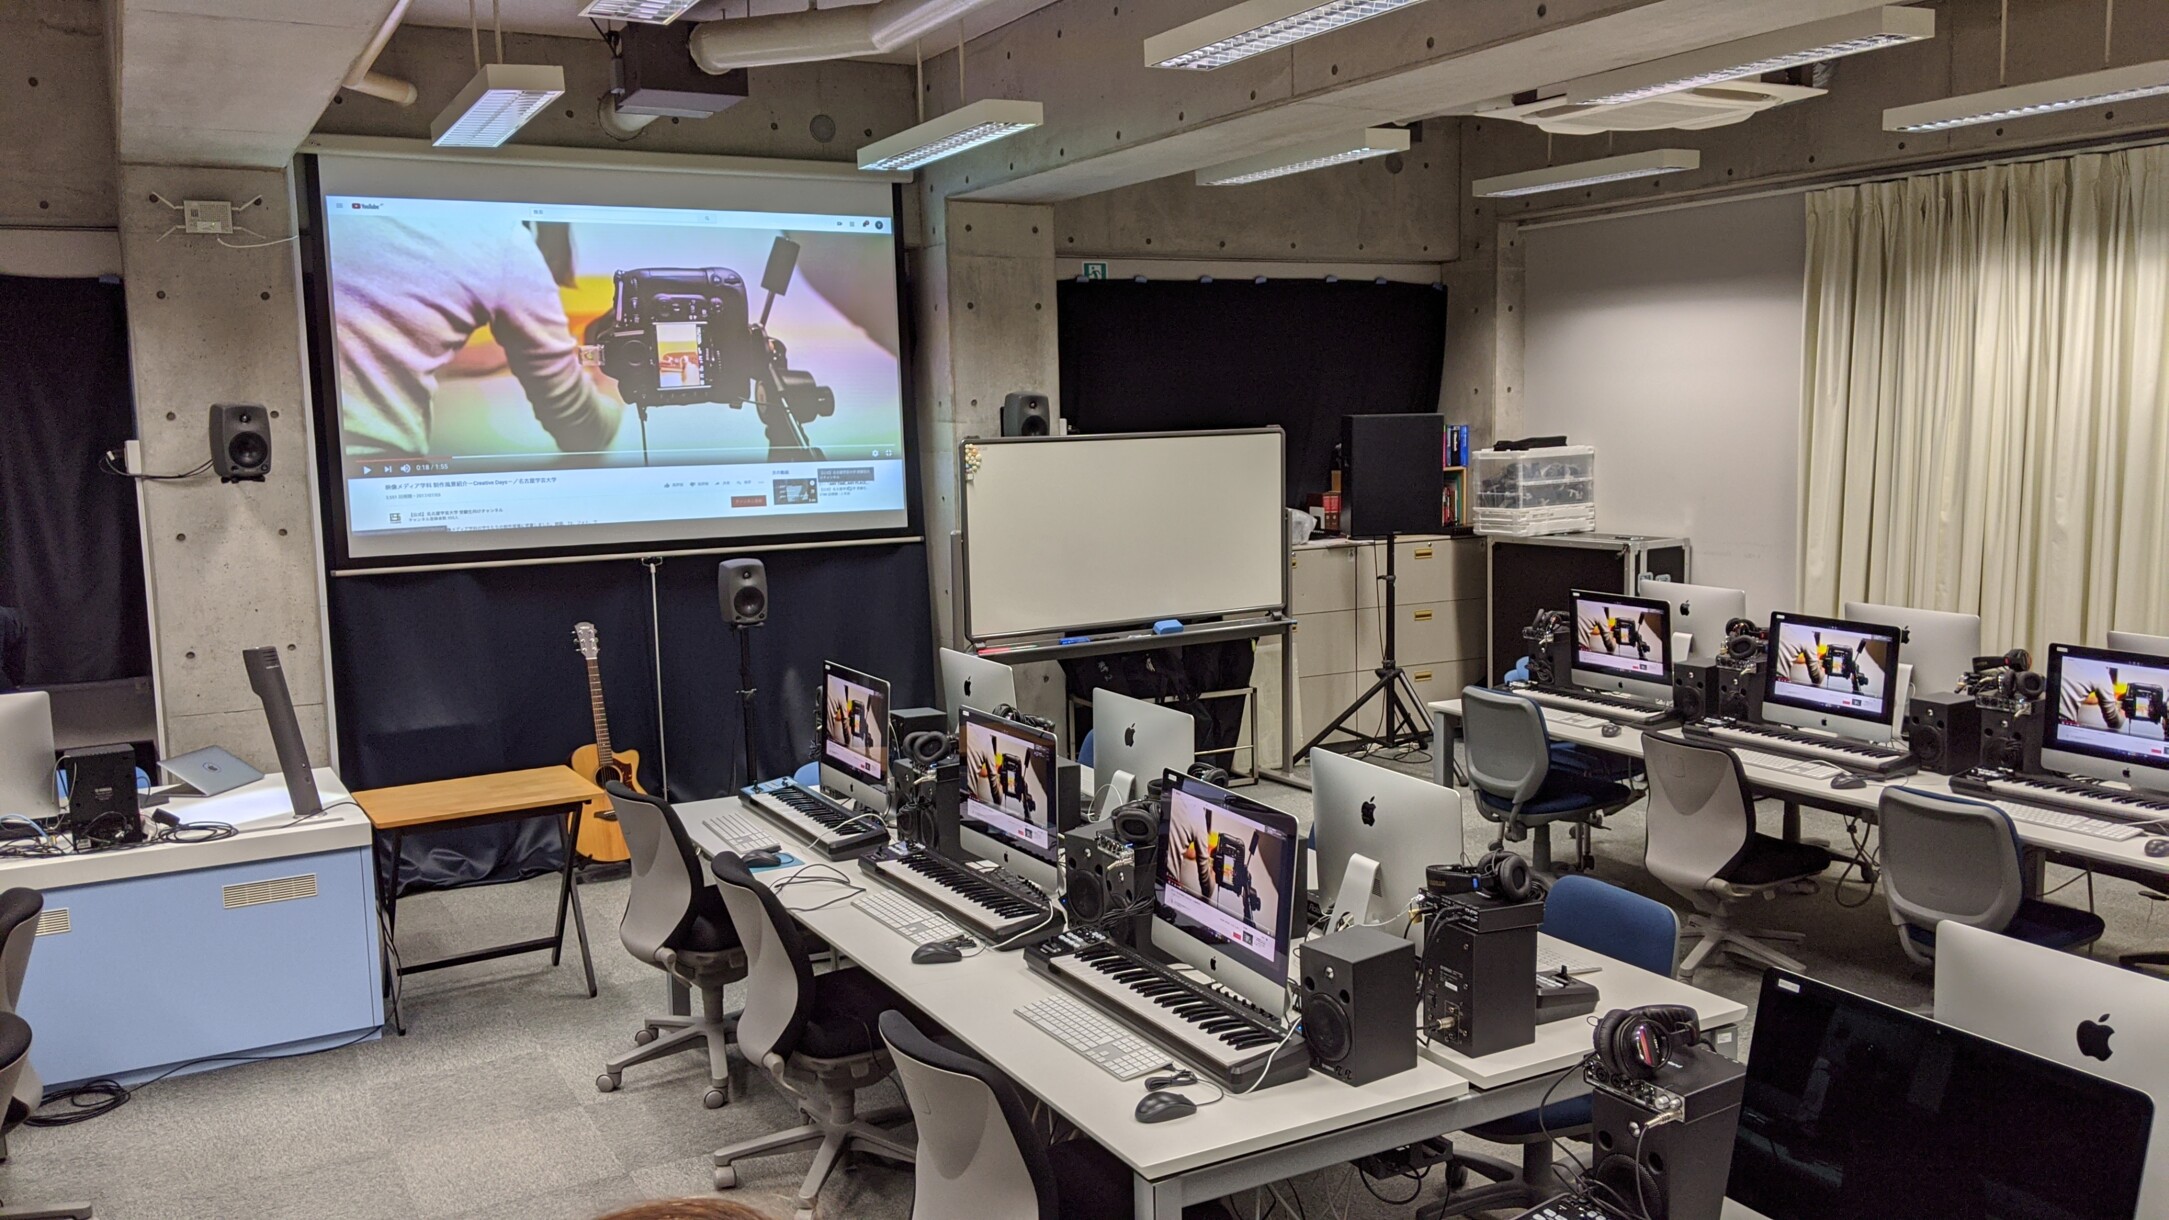 Tonübungsraum: Der Computerbildschirm des Dozententisches kann auf die Bildschirme der Studenten gespiegelt werden.